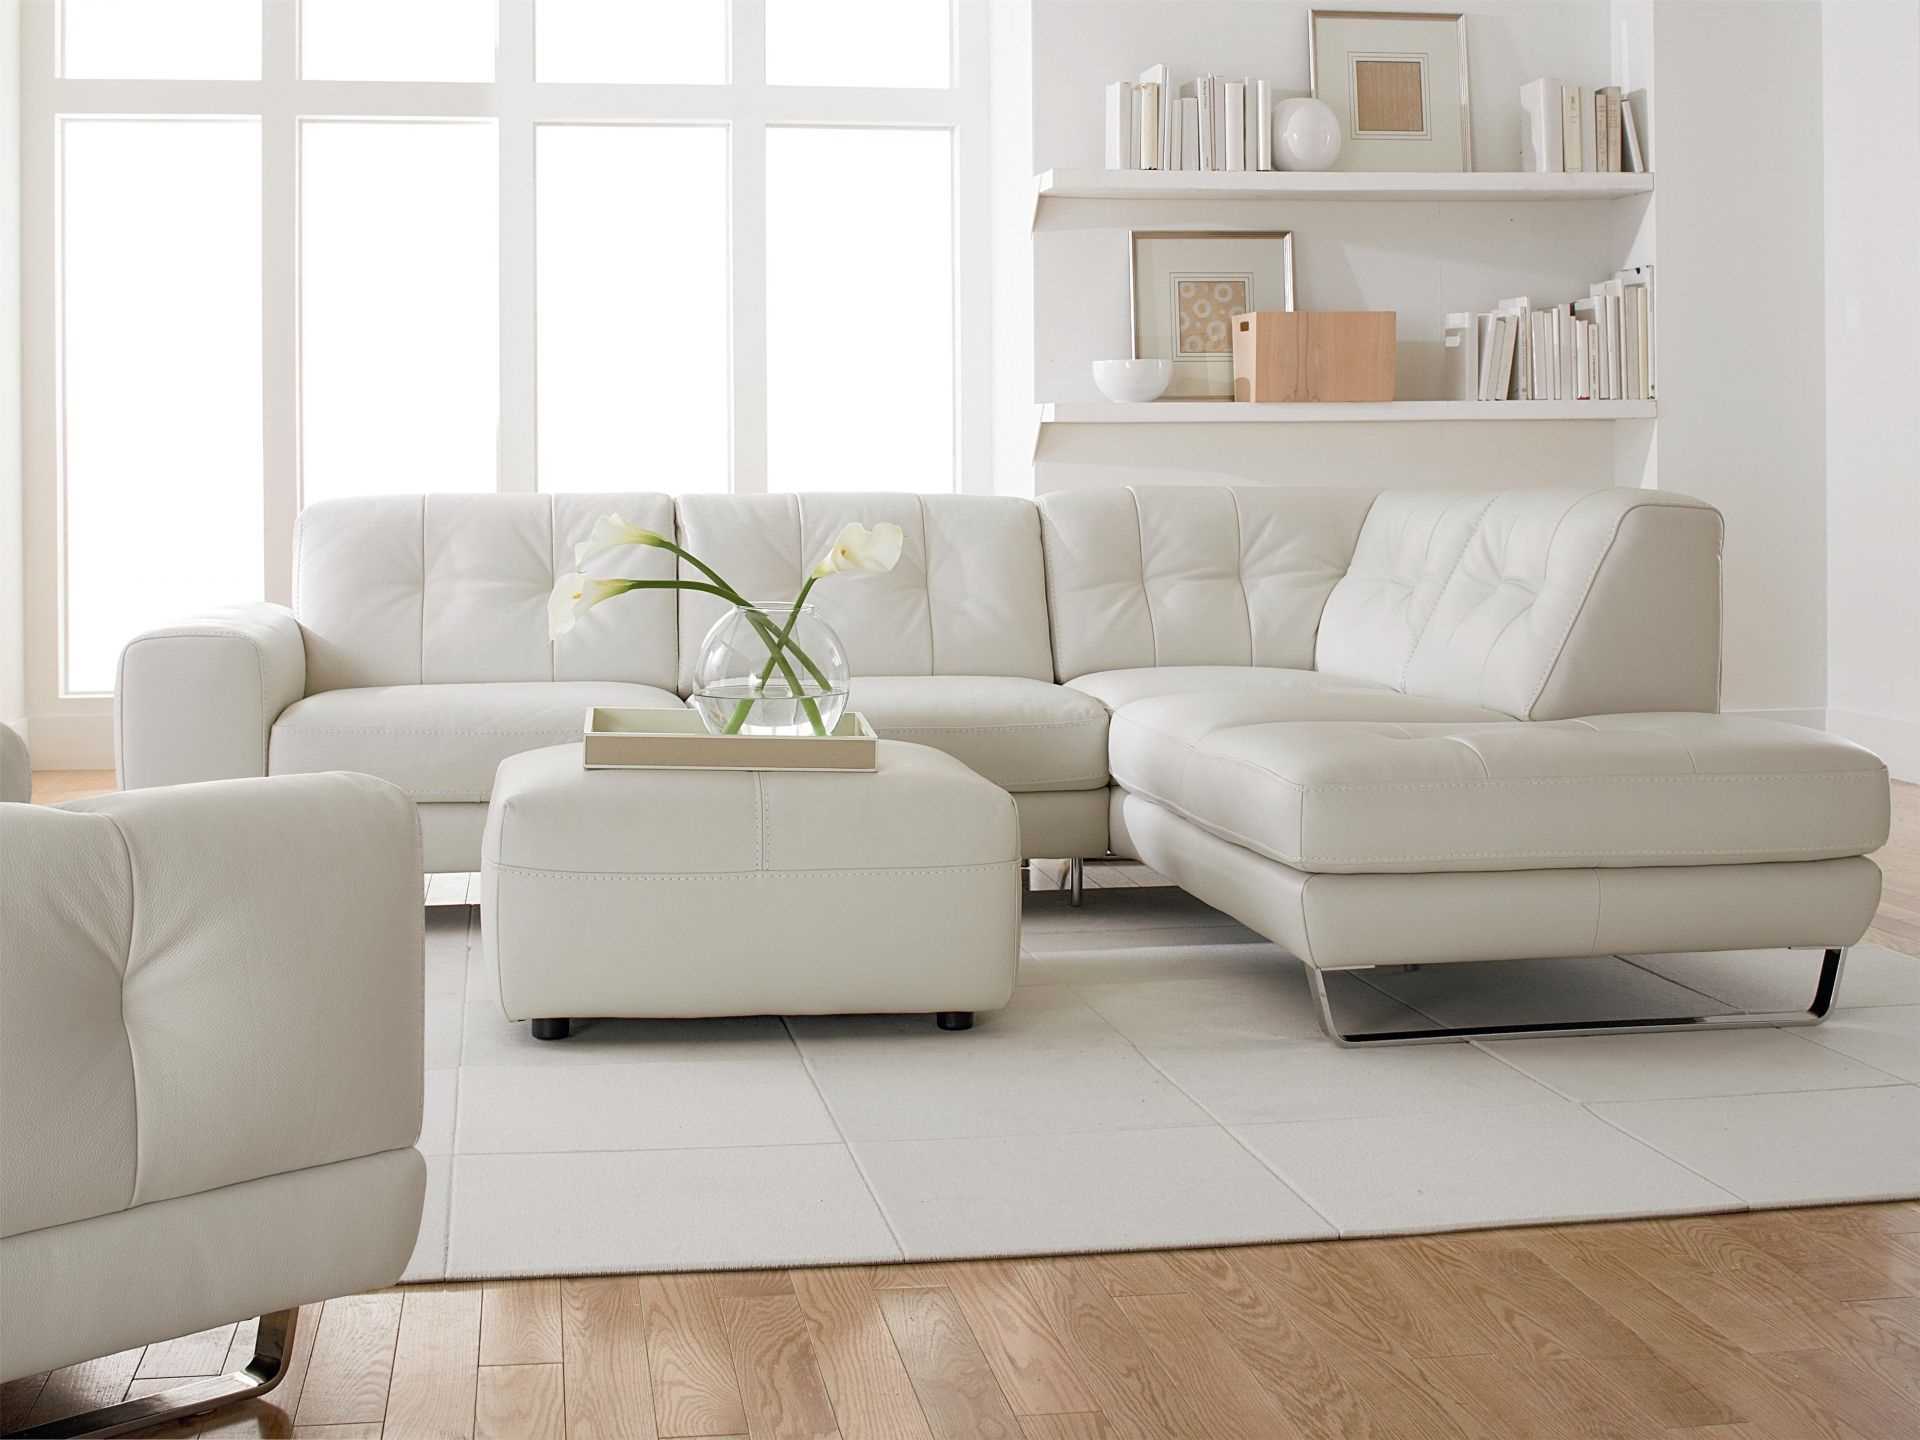 ideja modernog dizajna sobe s kaučem